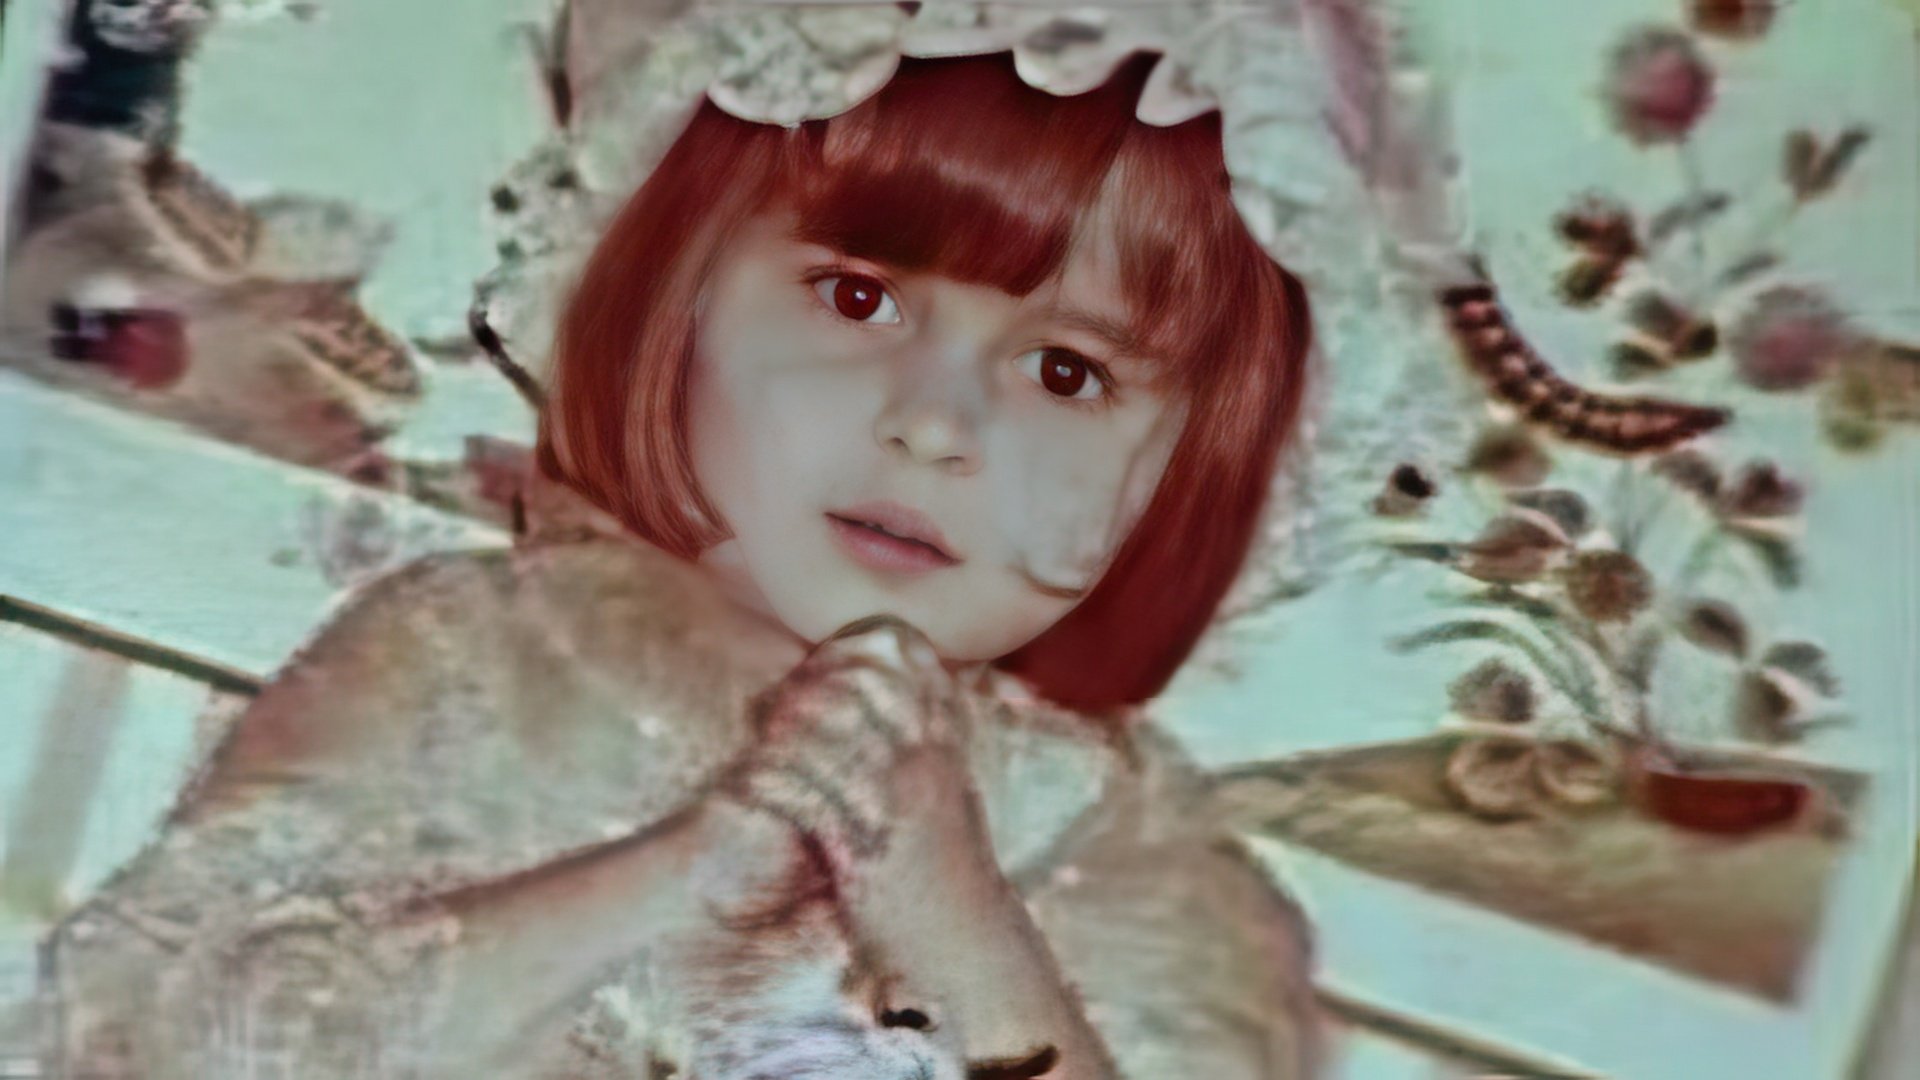 Helena Bonham Carter as a child